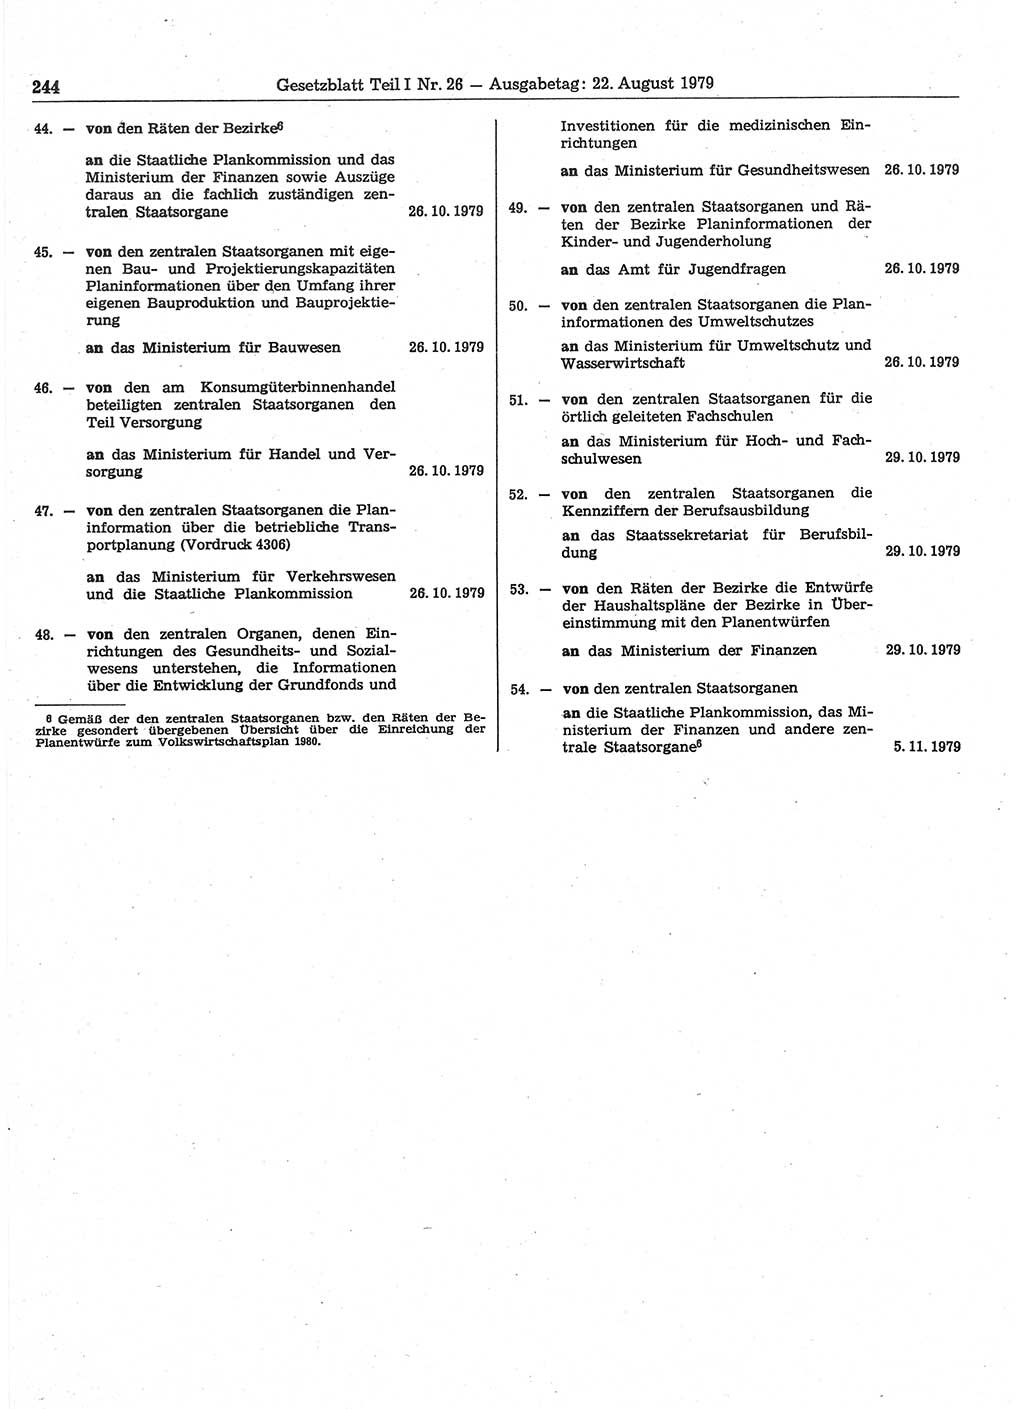 Gesetzblatt (GBl.) der Deutschen Demokratischen Republik (DDR) Teil Ⅰ 1979, Seite 244 (GBl. DDR Ⅰ 1979, S. 244)